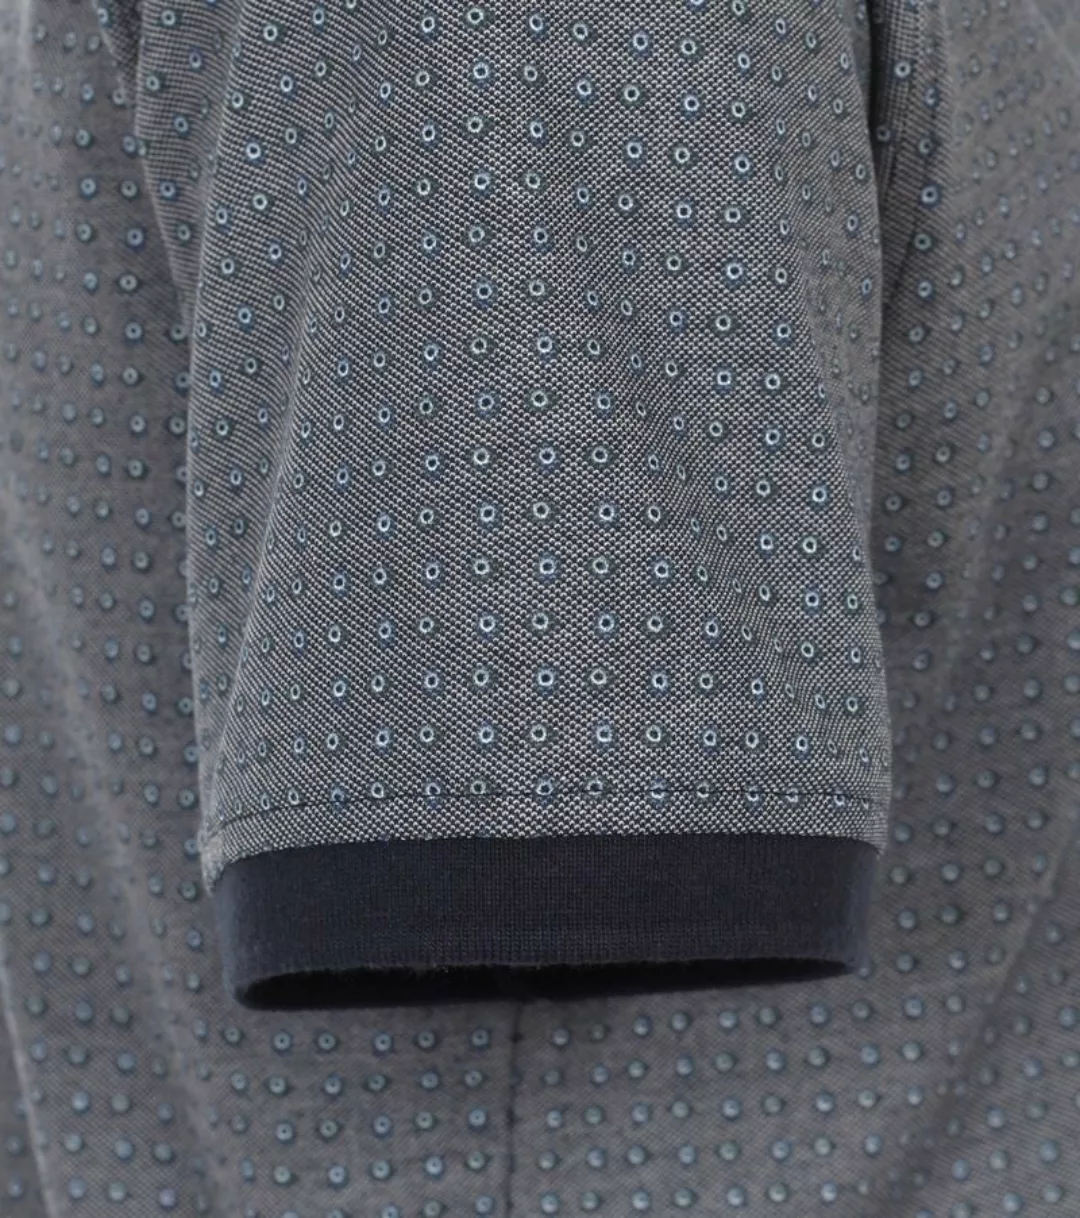 Casa Moda Poloshirt Druck Grau Blau - Größe L günstig online kaufen